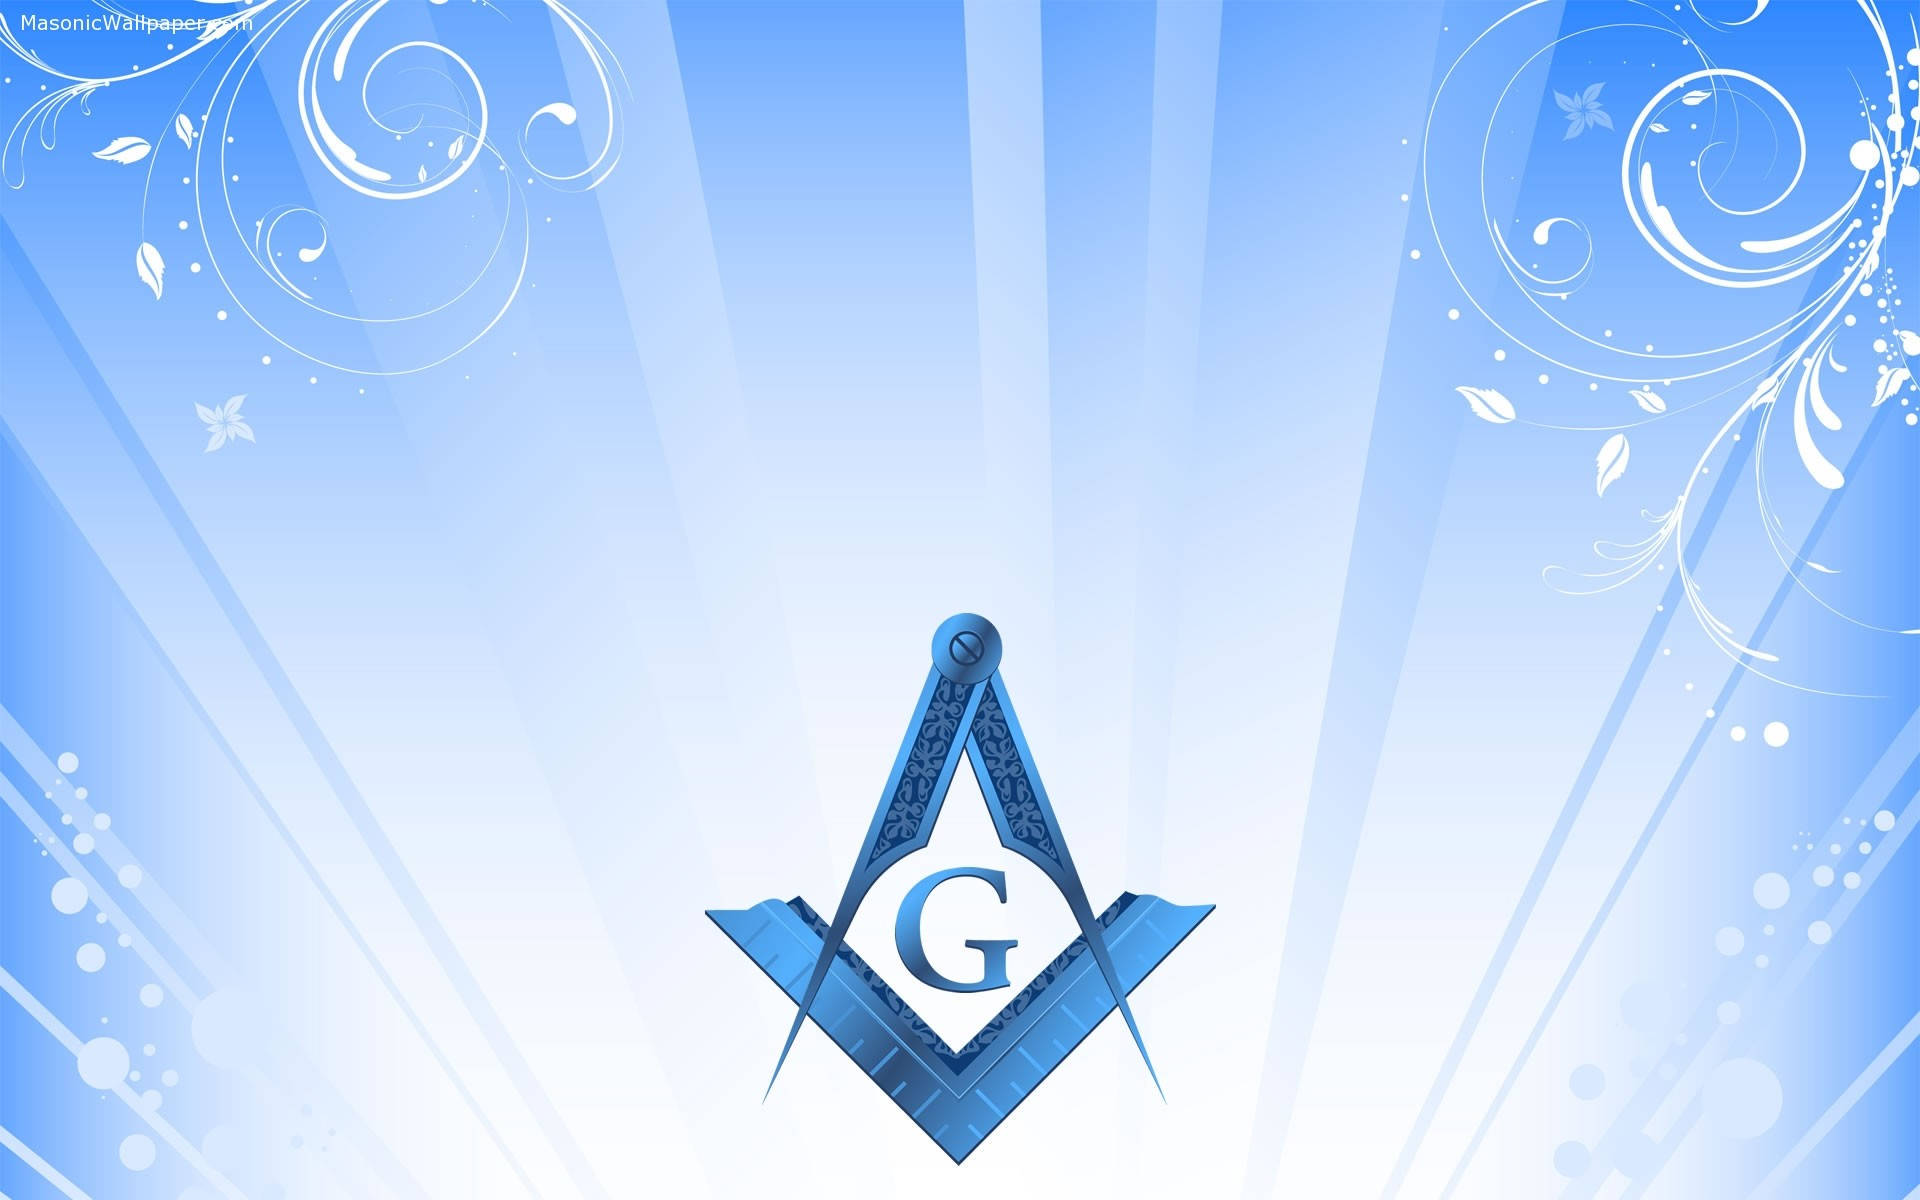 Blue Masonic Logo And Background